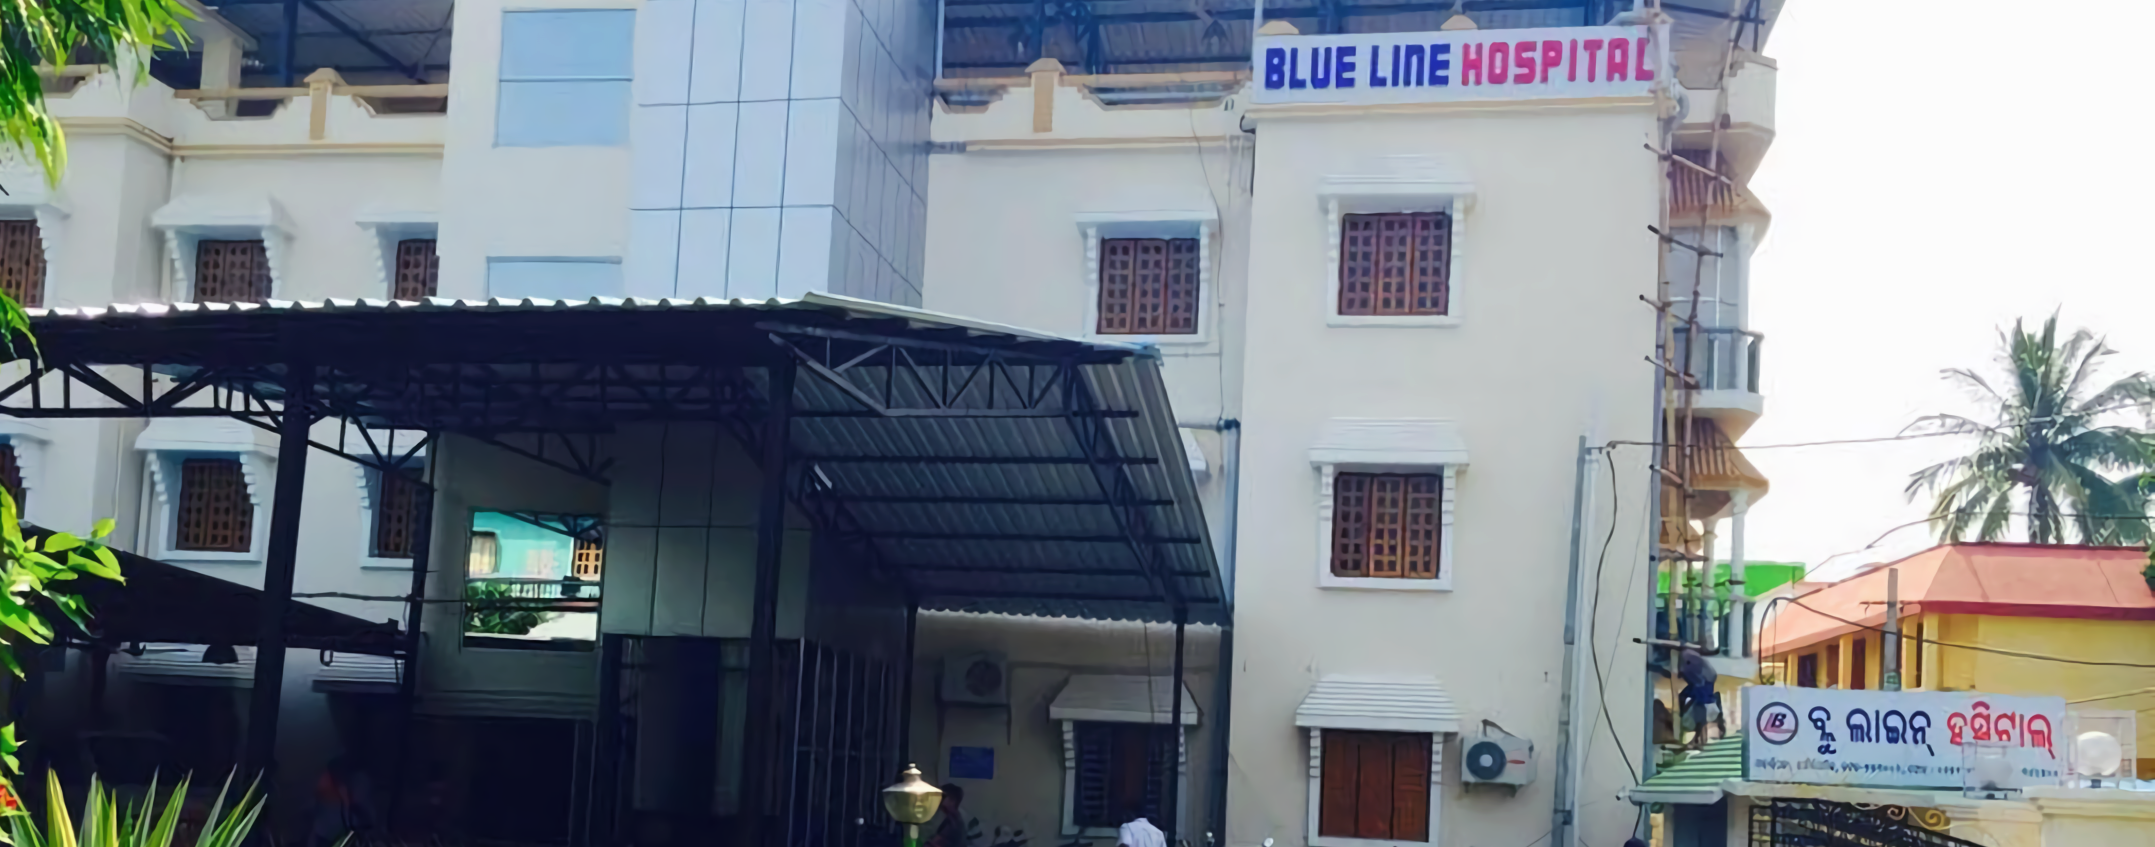 Blue Line Hospital